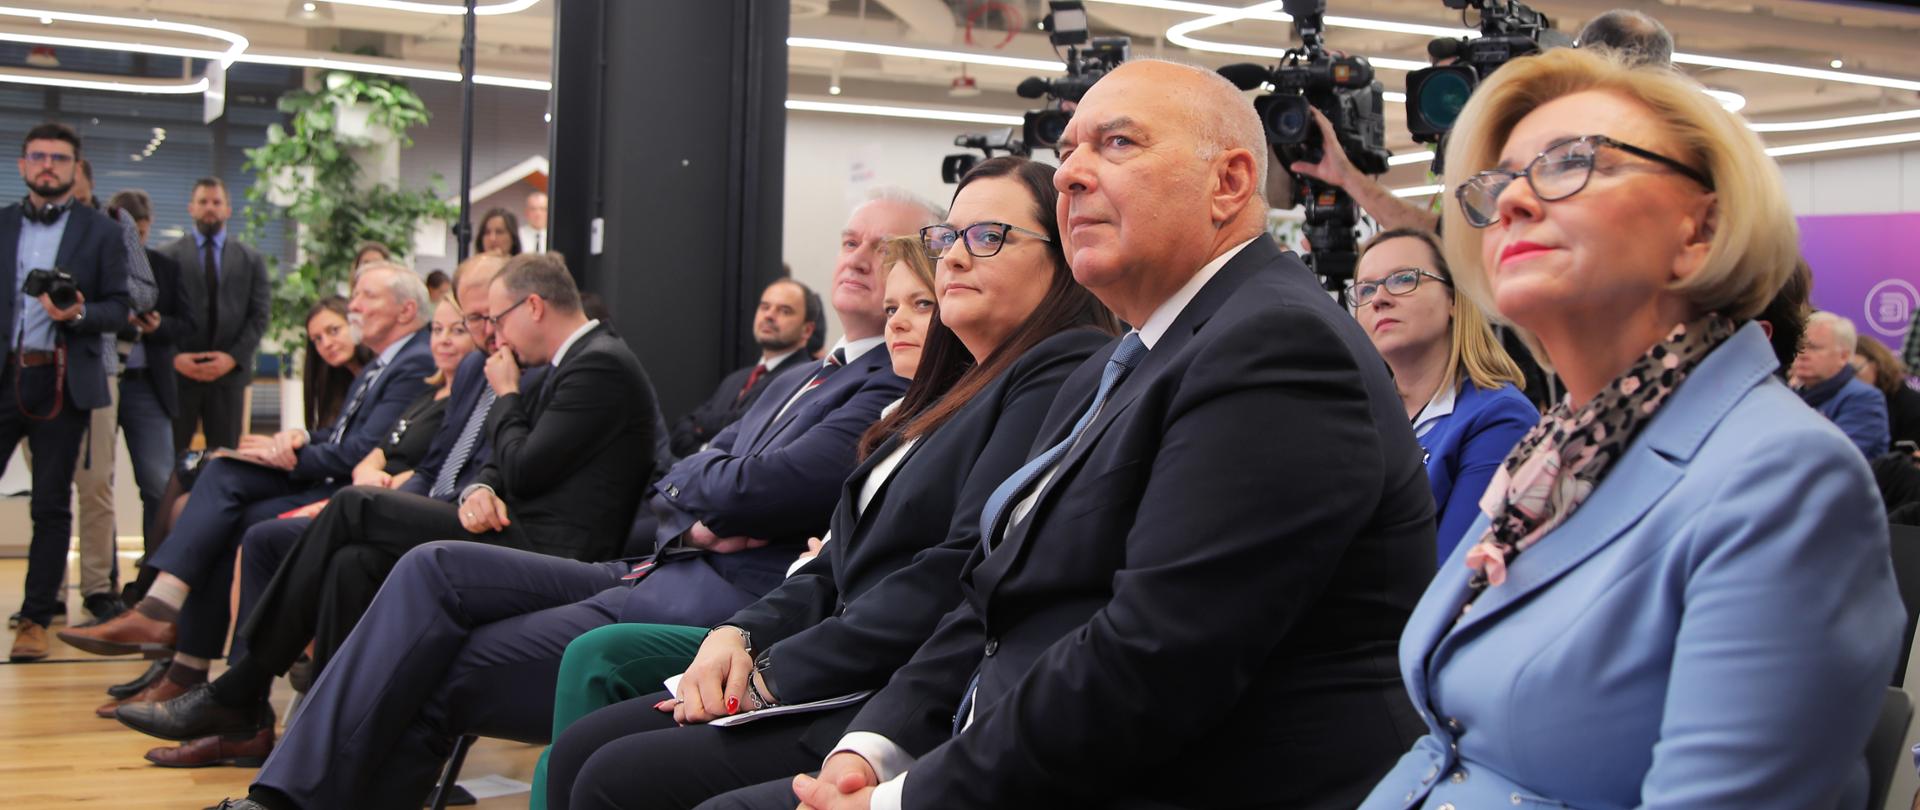 Podczas konferencji uczestnicy siedzą na krzesłach ustawionych w rzędach. W pierwszym szeregu od lewej Jarosław Gowin, Jadwiga Emilewicz, Małgorzata Jarosińska-Jedynak oraz Tadeusz Kościński.